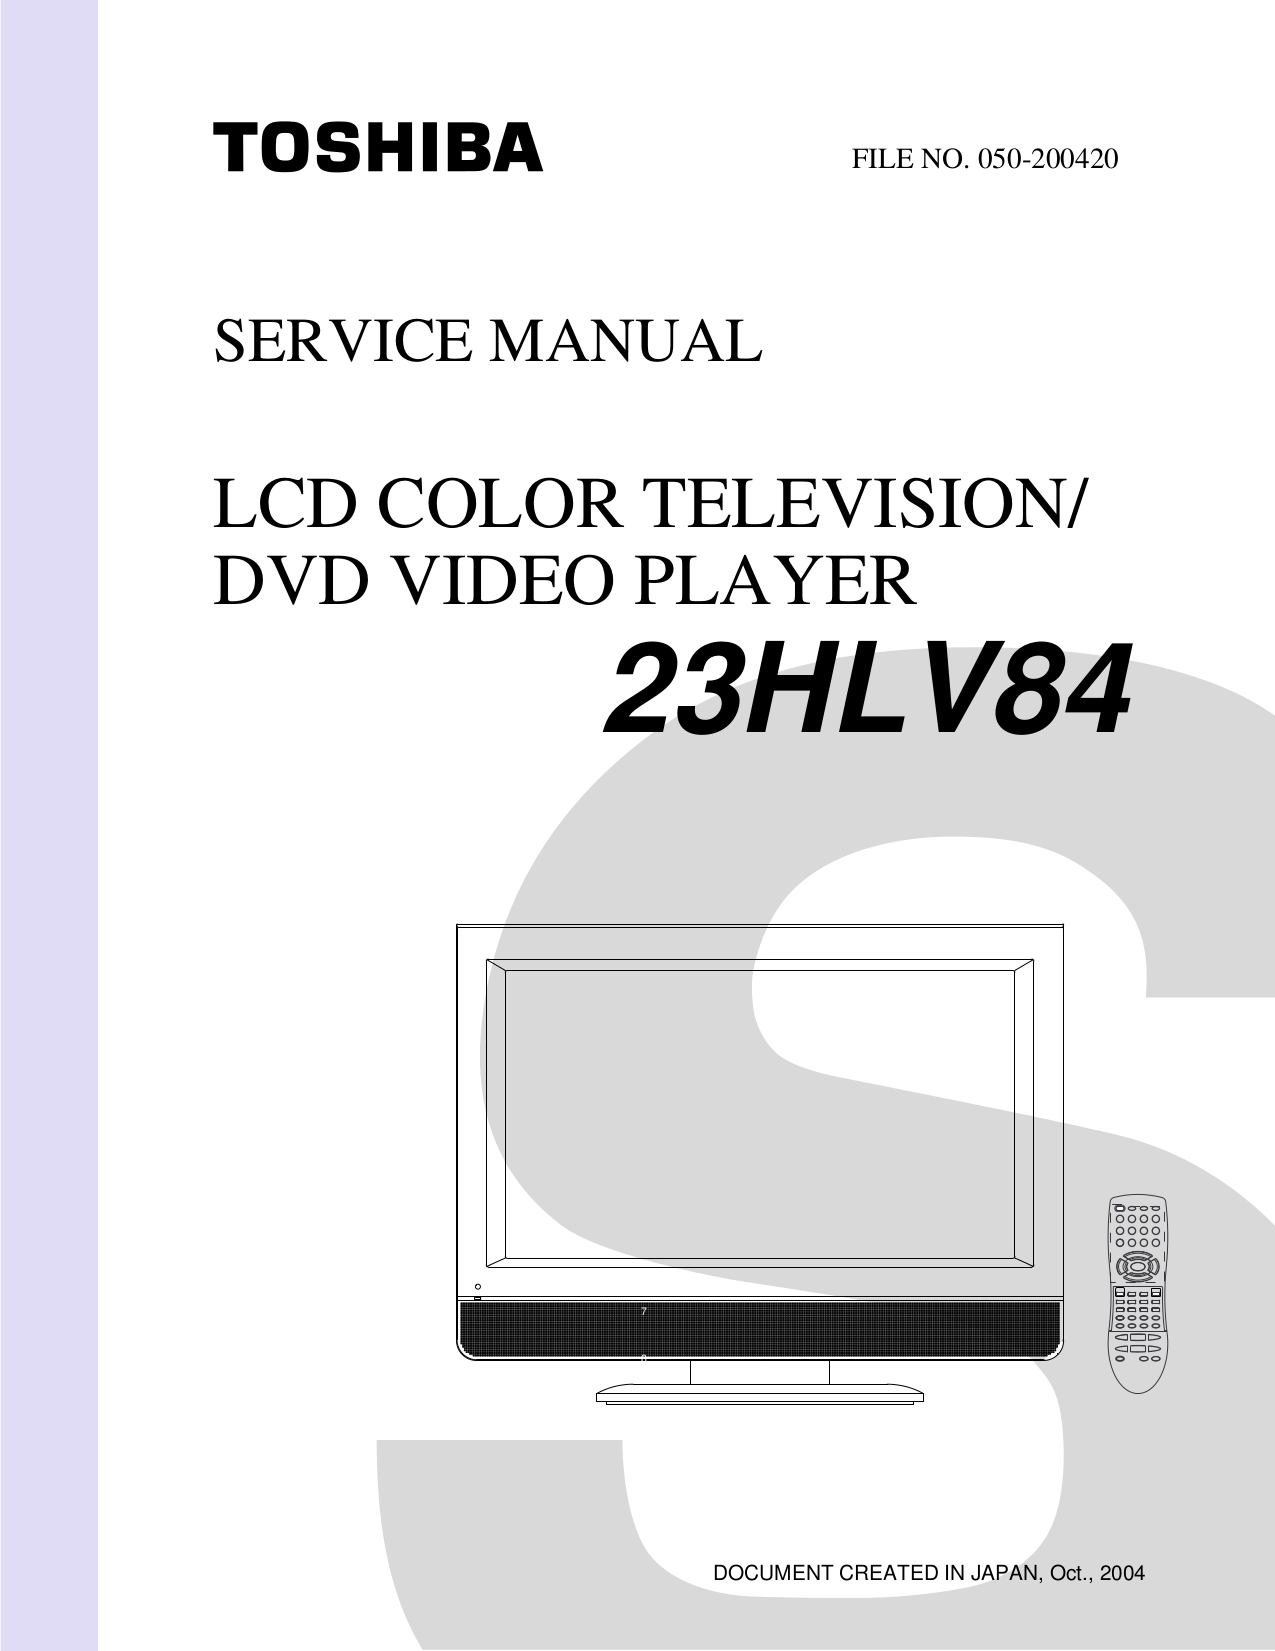 Инструкция телевизора toshiba. Kia 640c сервис мануал. Телевизор Toshiba md20h62 (Retro) 20 inch CRT Flat Screen TV/DVD Combo no Remote схема. V 87ms Toshiba инструкция.